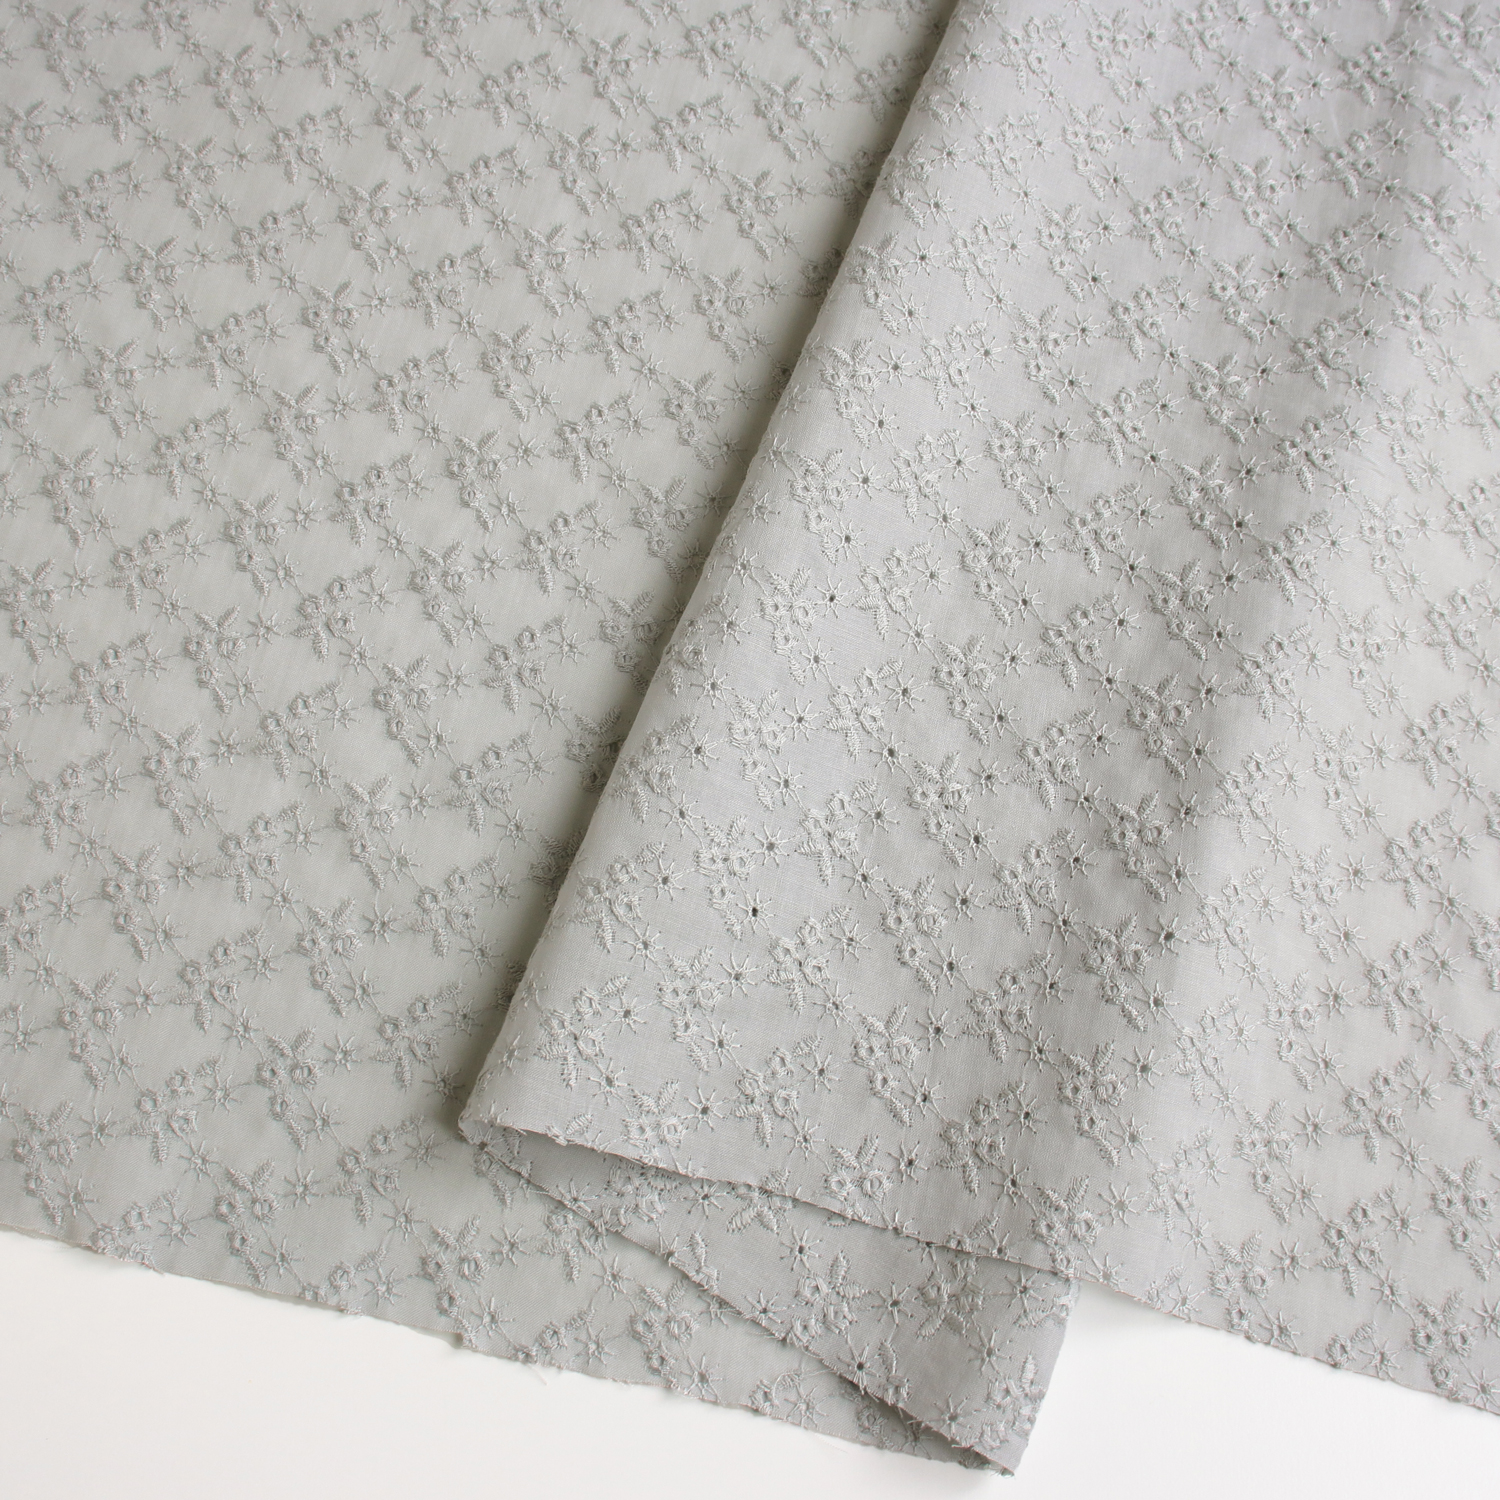 AL694-31 cotton lace fabric, Width 100cm, 1m/unit (m)